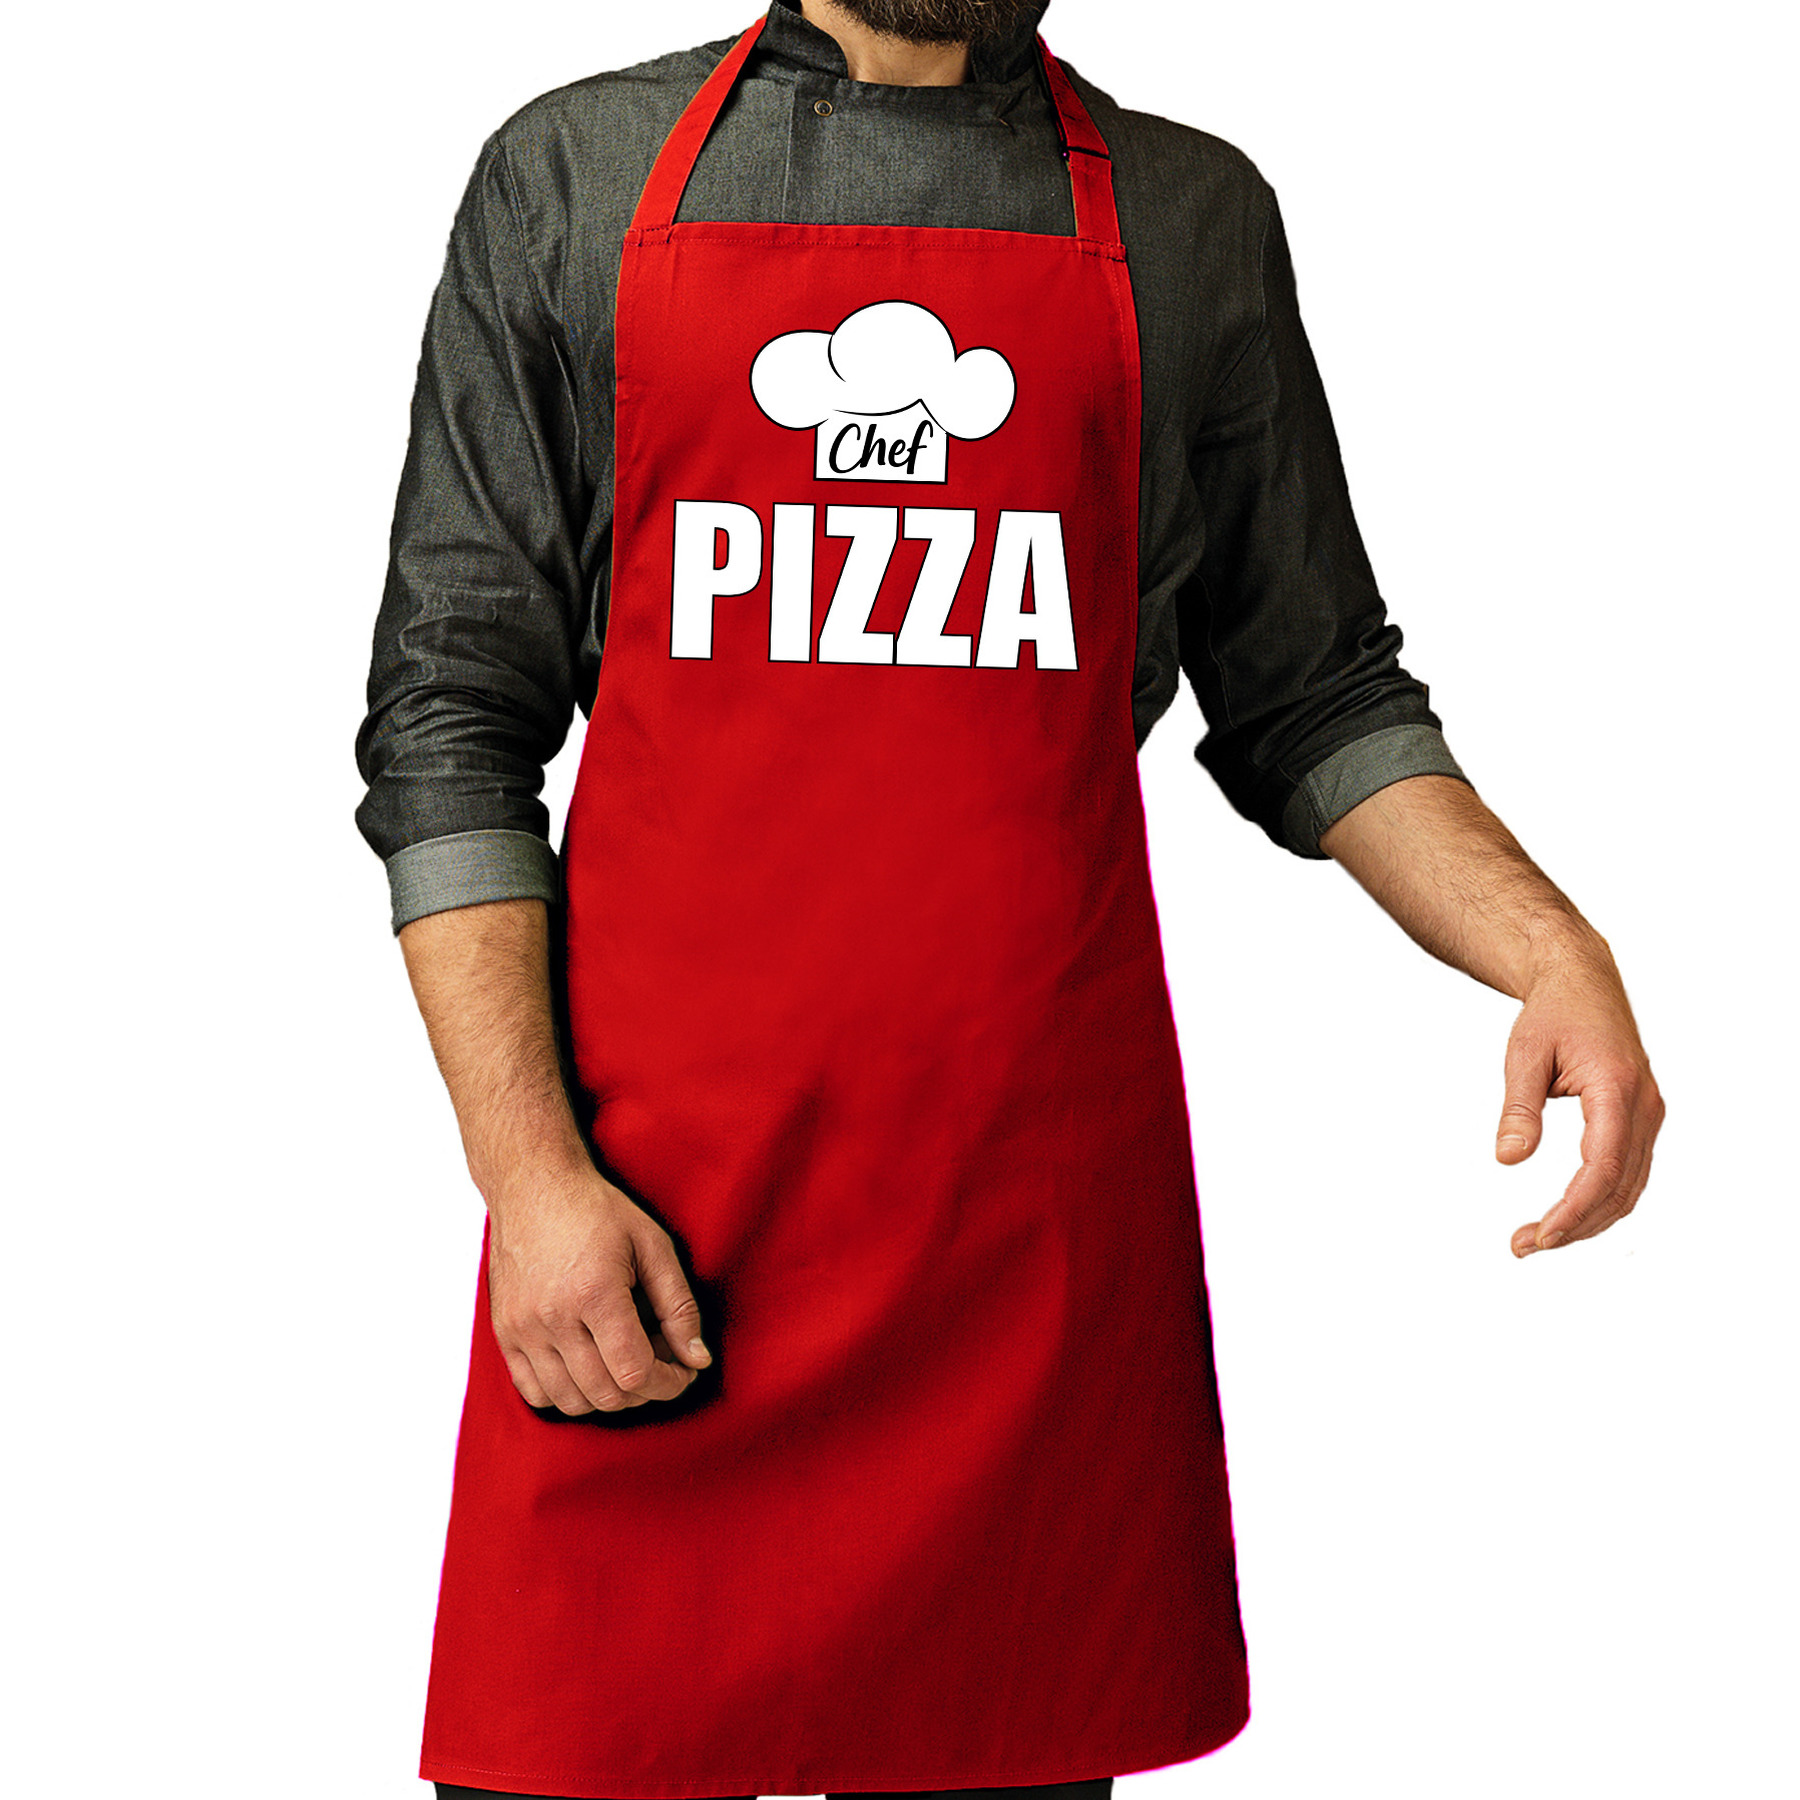 Chef pizza schort-keukenschort rood heren